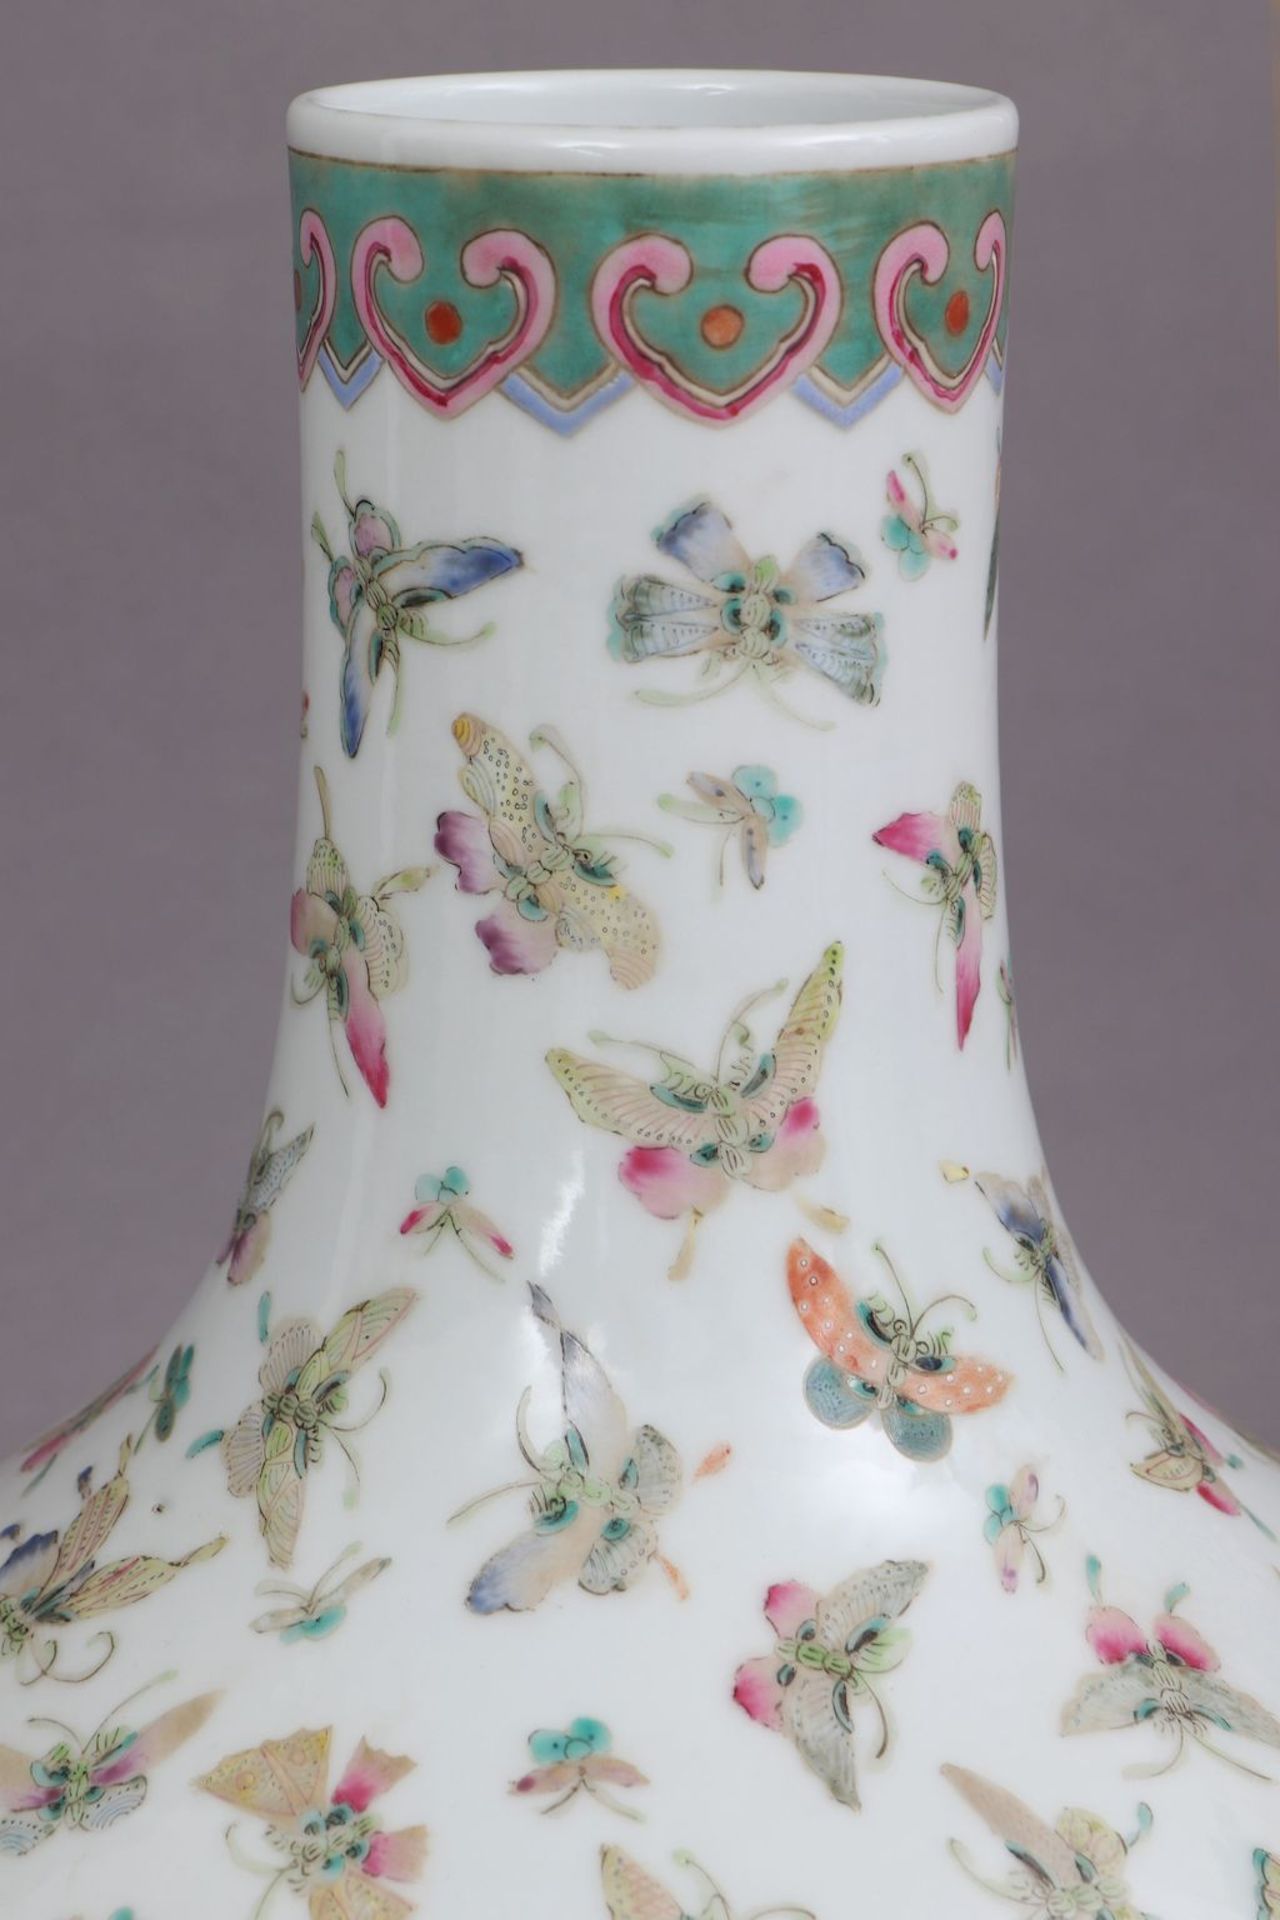 Chinesische Porzellanvase mit Schmetterlingsdekor - Bild 2 aus 5